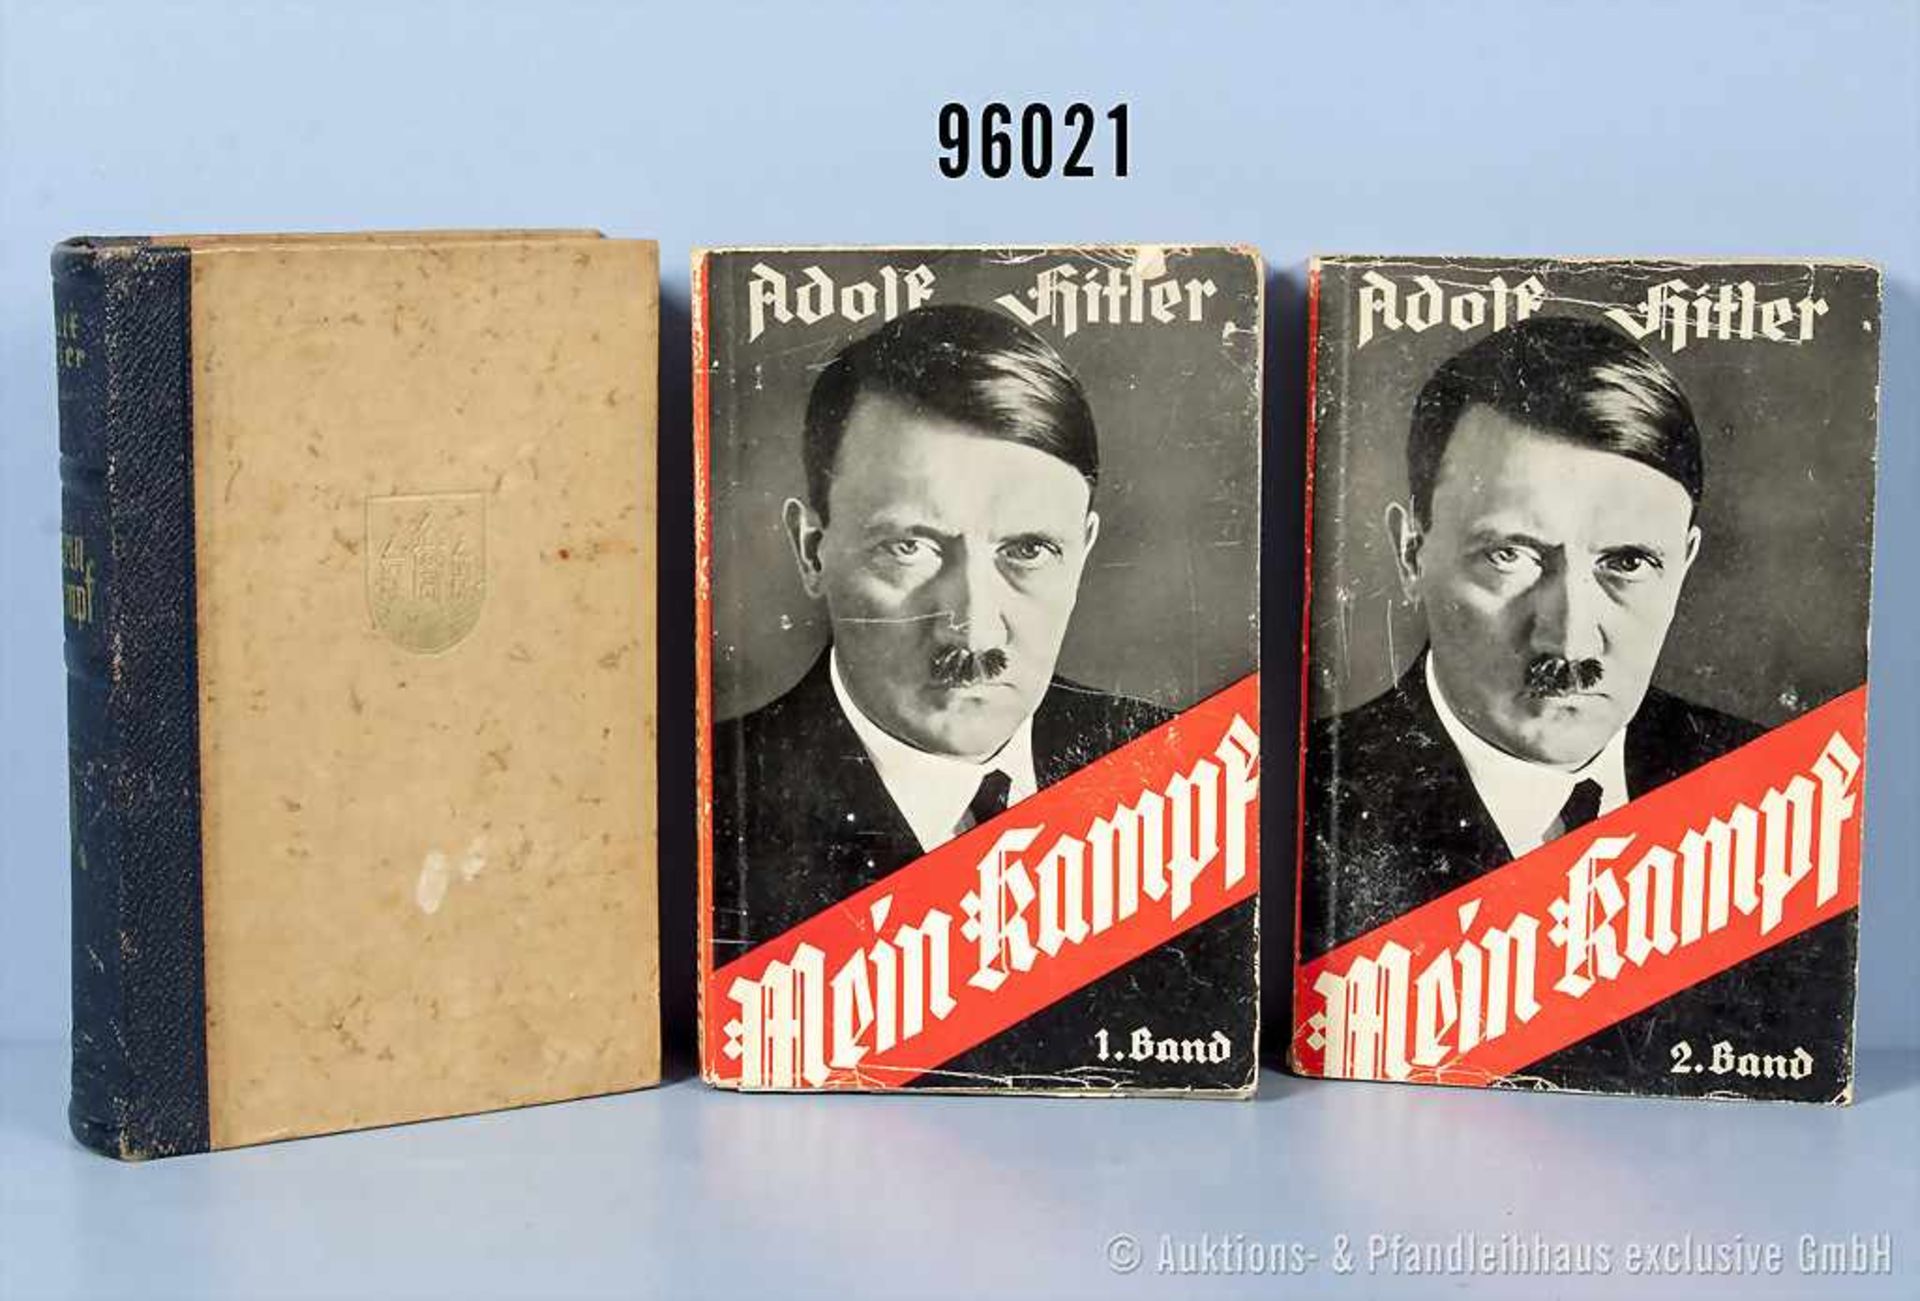 Konv. Adolf Hitler "Mein Kampf", Halblederausf. von 1940, Vorsatzblatt fehlt sowie beschädigte 2-